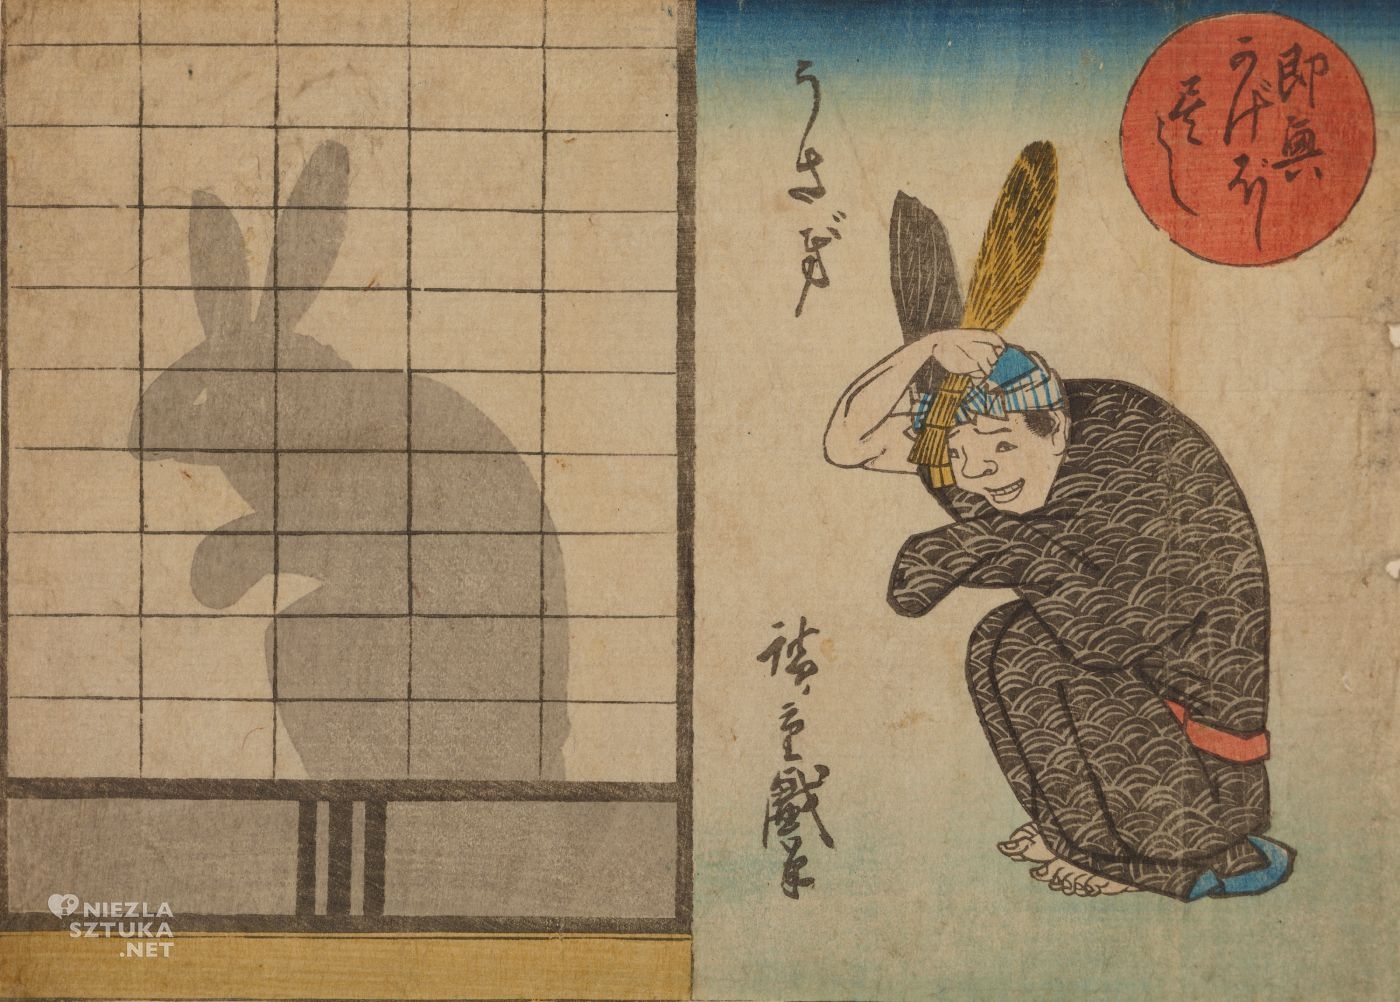 Utagawa Hiroshige, Improwizowany cień - zając, Usagi, grafika artystyczna, drzeworyt, sztuka, sztuka japońska, ukiyo-e, drzeworyty japońskie, niezła sztuka